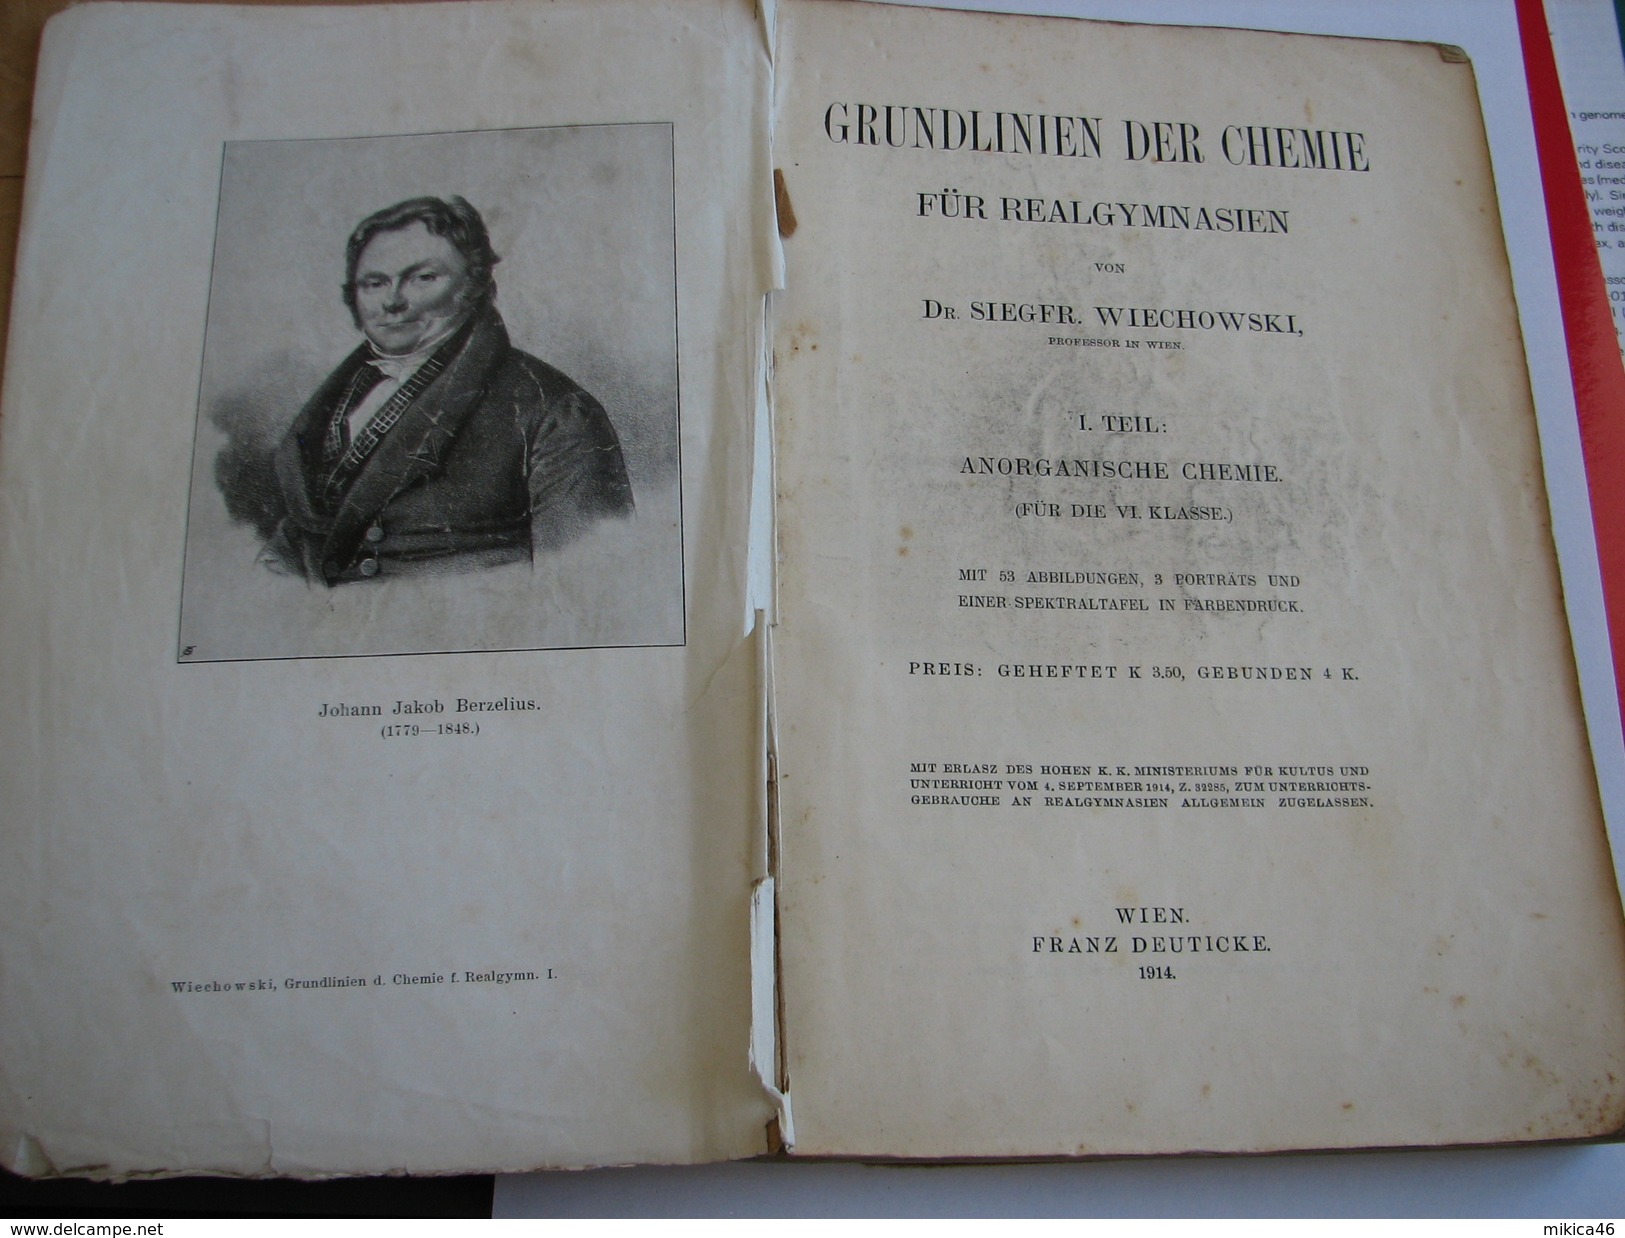 Grundlinien Der Chemie - Wiechowski Siegfried - 1914 - Old Books